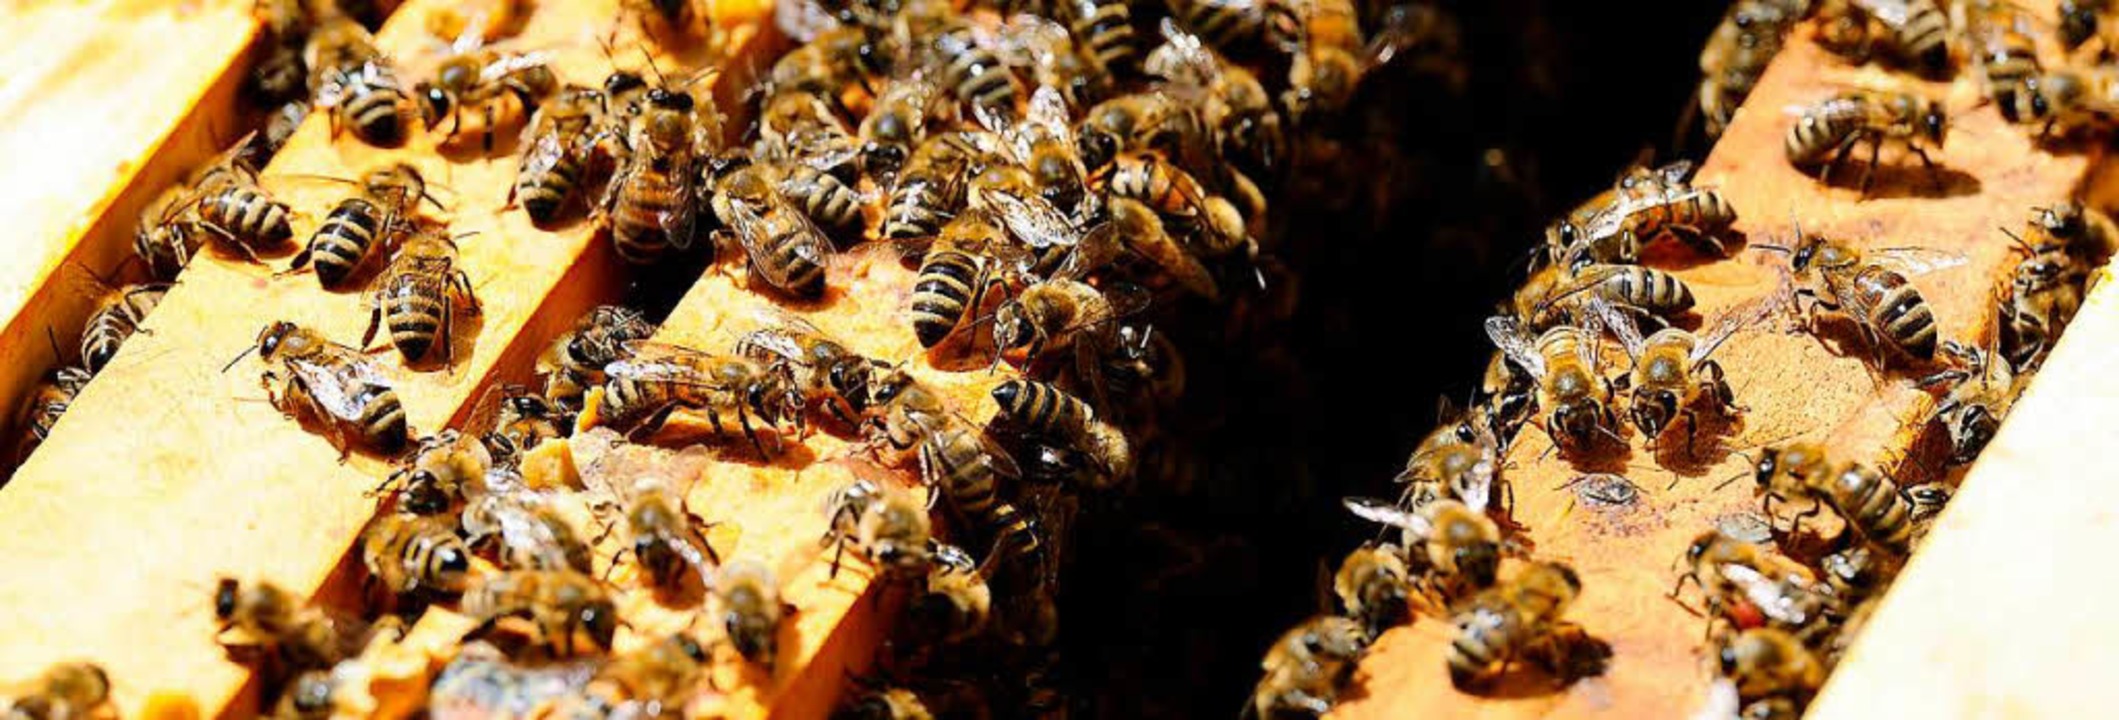 Bienen am Eingang zum Bienenstock  | Foto: INGO SCHNEIDER